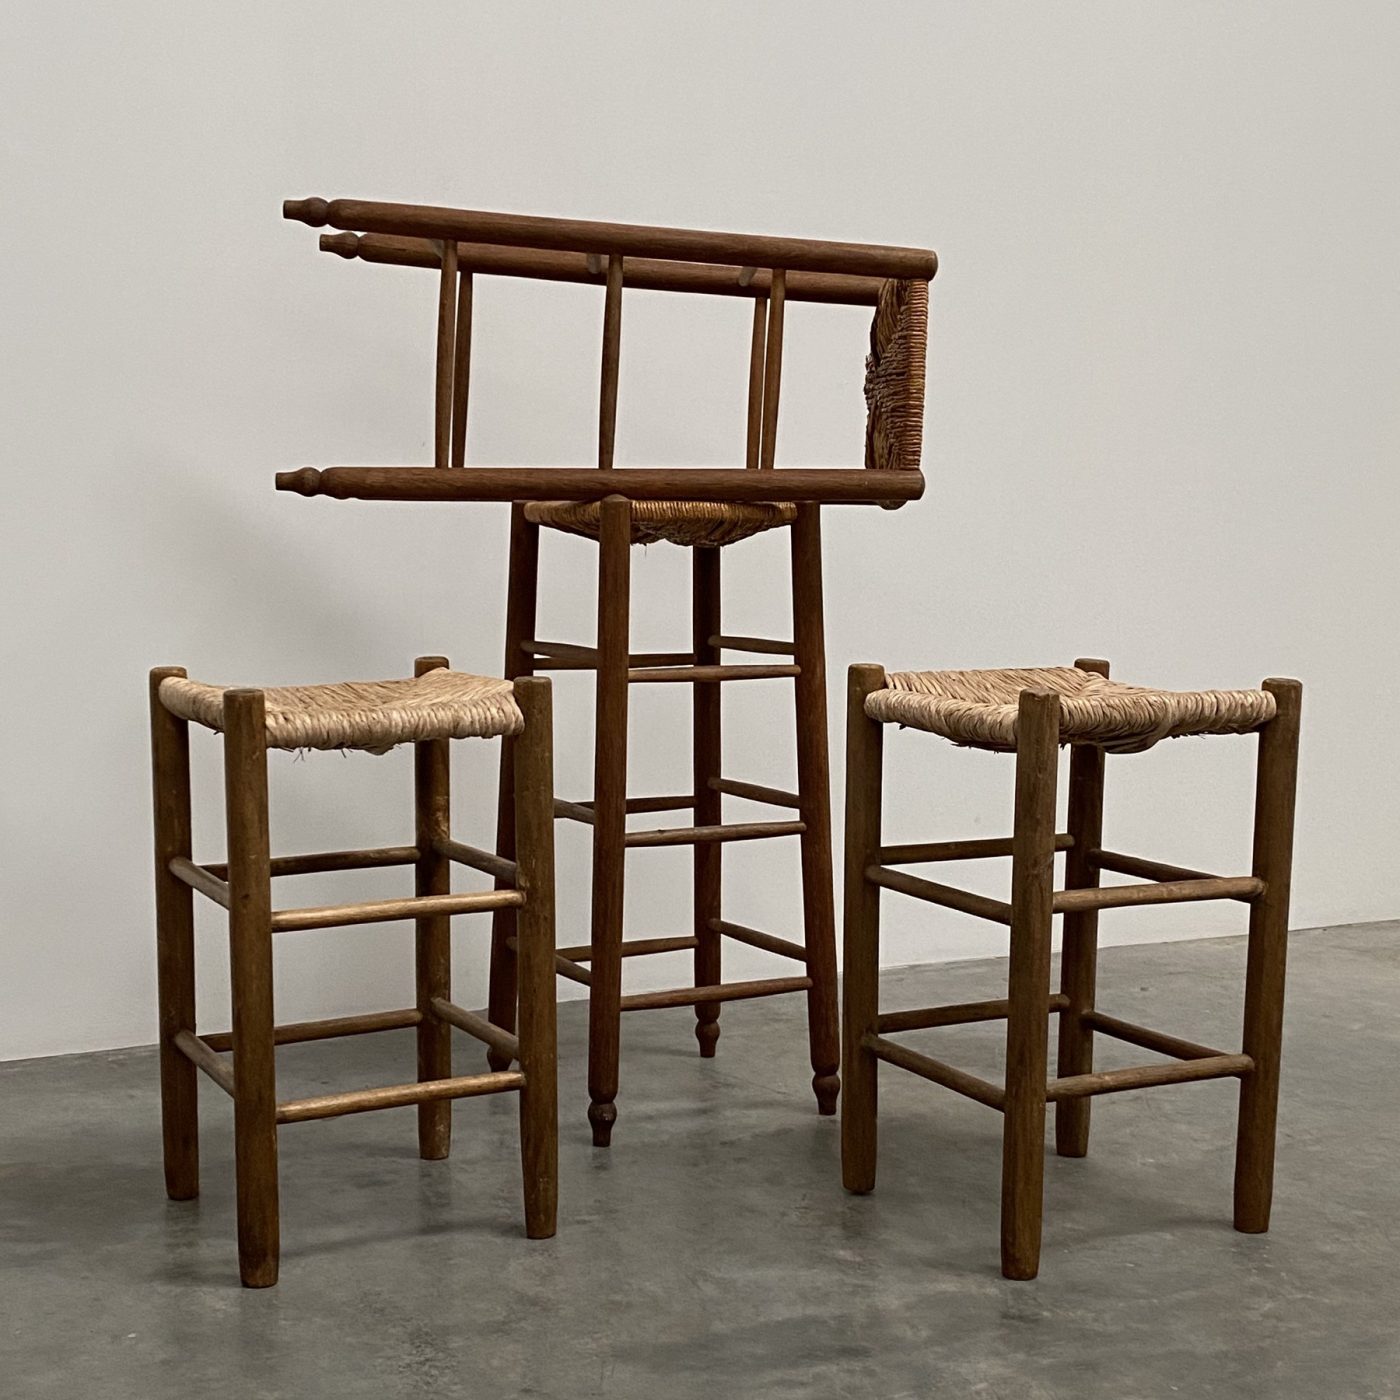 objet-vagabond-french-stools0000